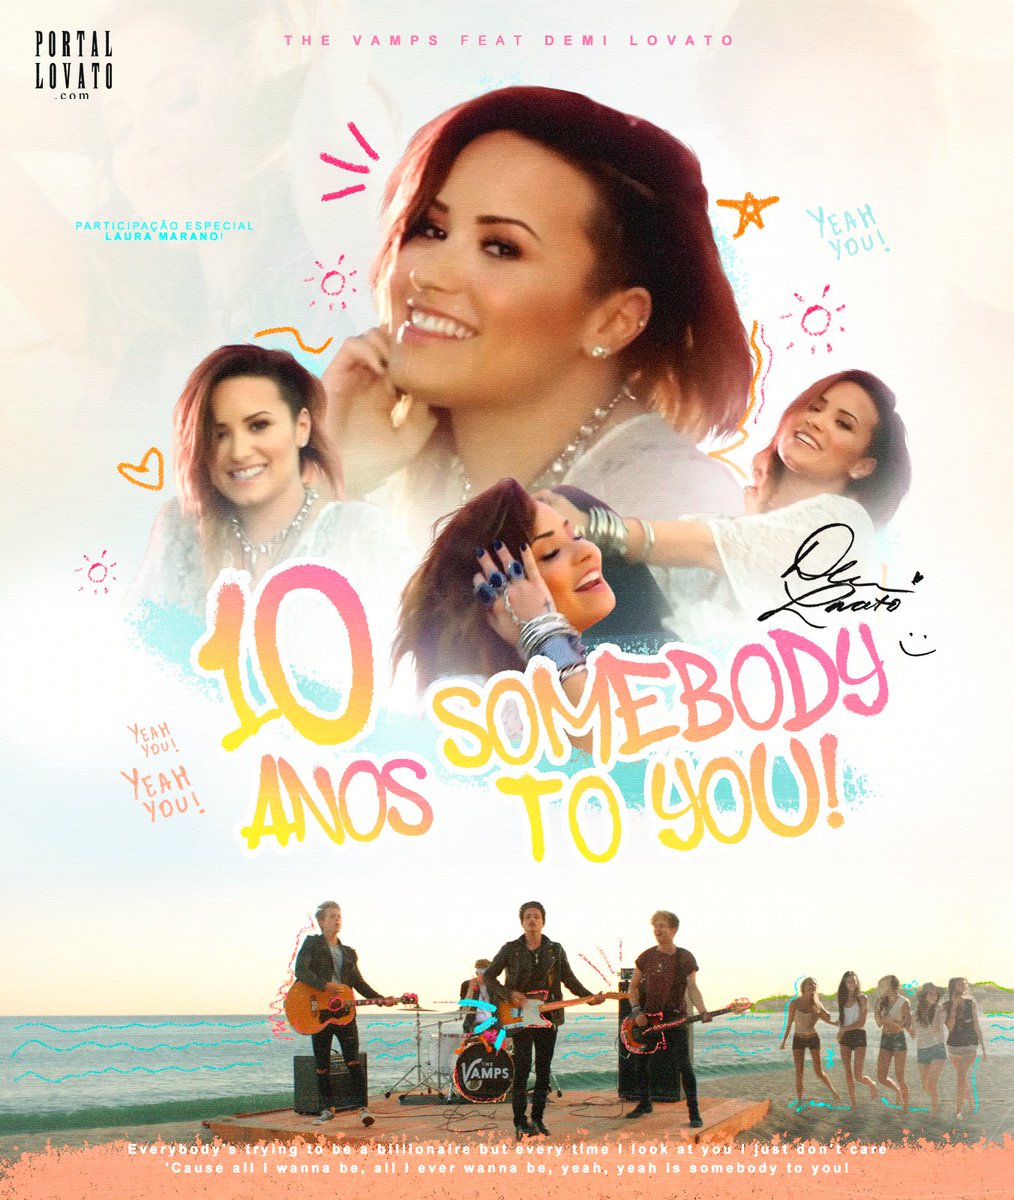 Há 10 anos, a música “Somebody To You” era lançada. A parceria entre a banda The Vamps e Demi Lovato atingiu o Top 5 no Reino Unido e possui mais de 250 milhões de visualizações no YouTube.